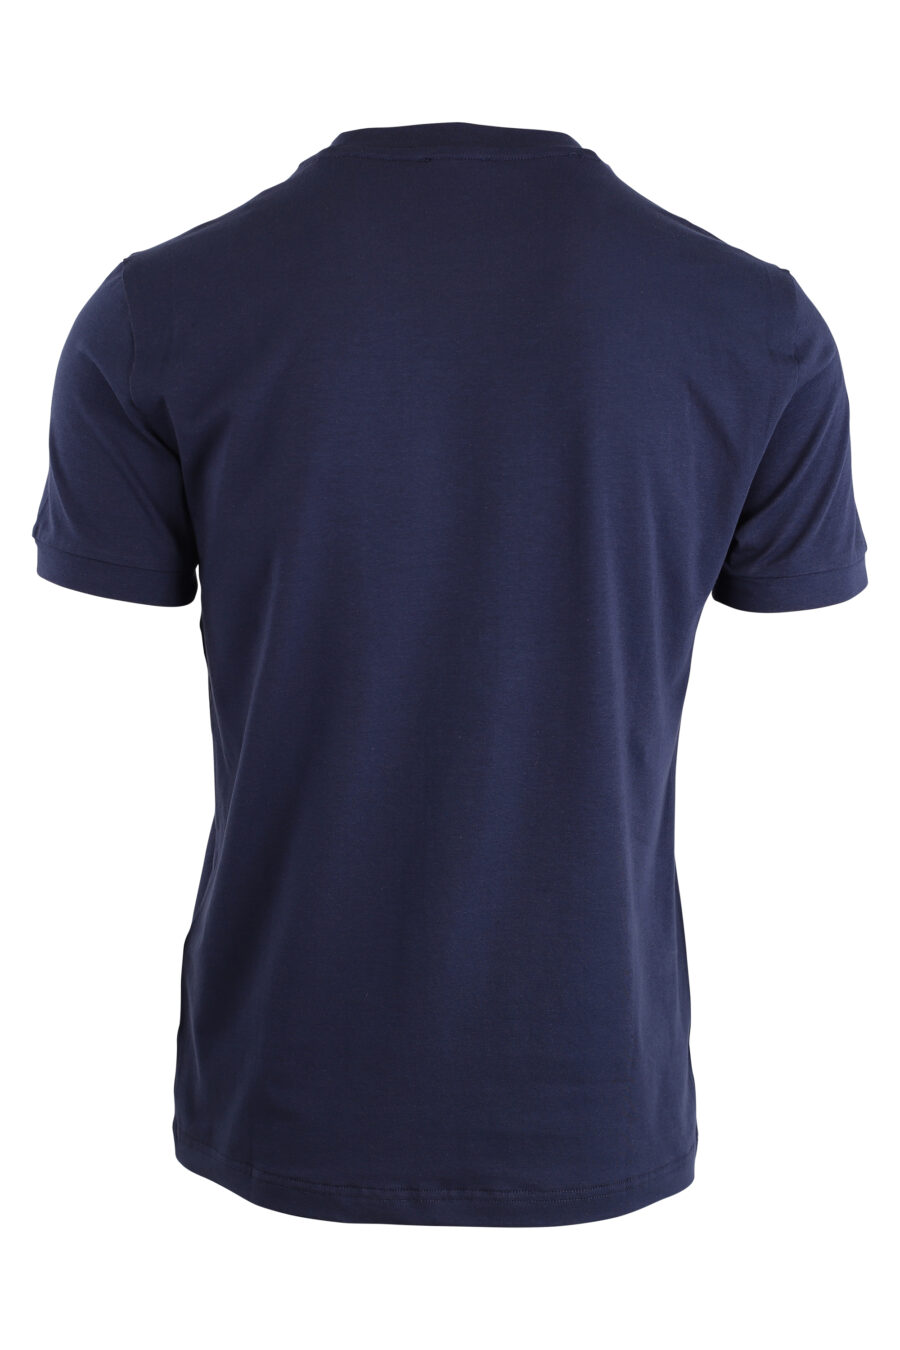 Camiseta azul oscuro con logo "lux identity" en cuadricula - IMG 4238